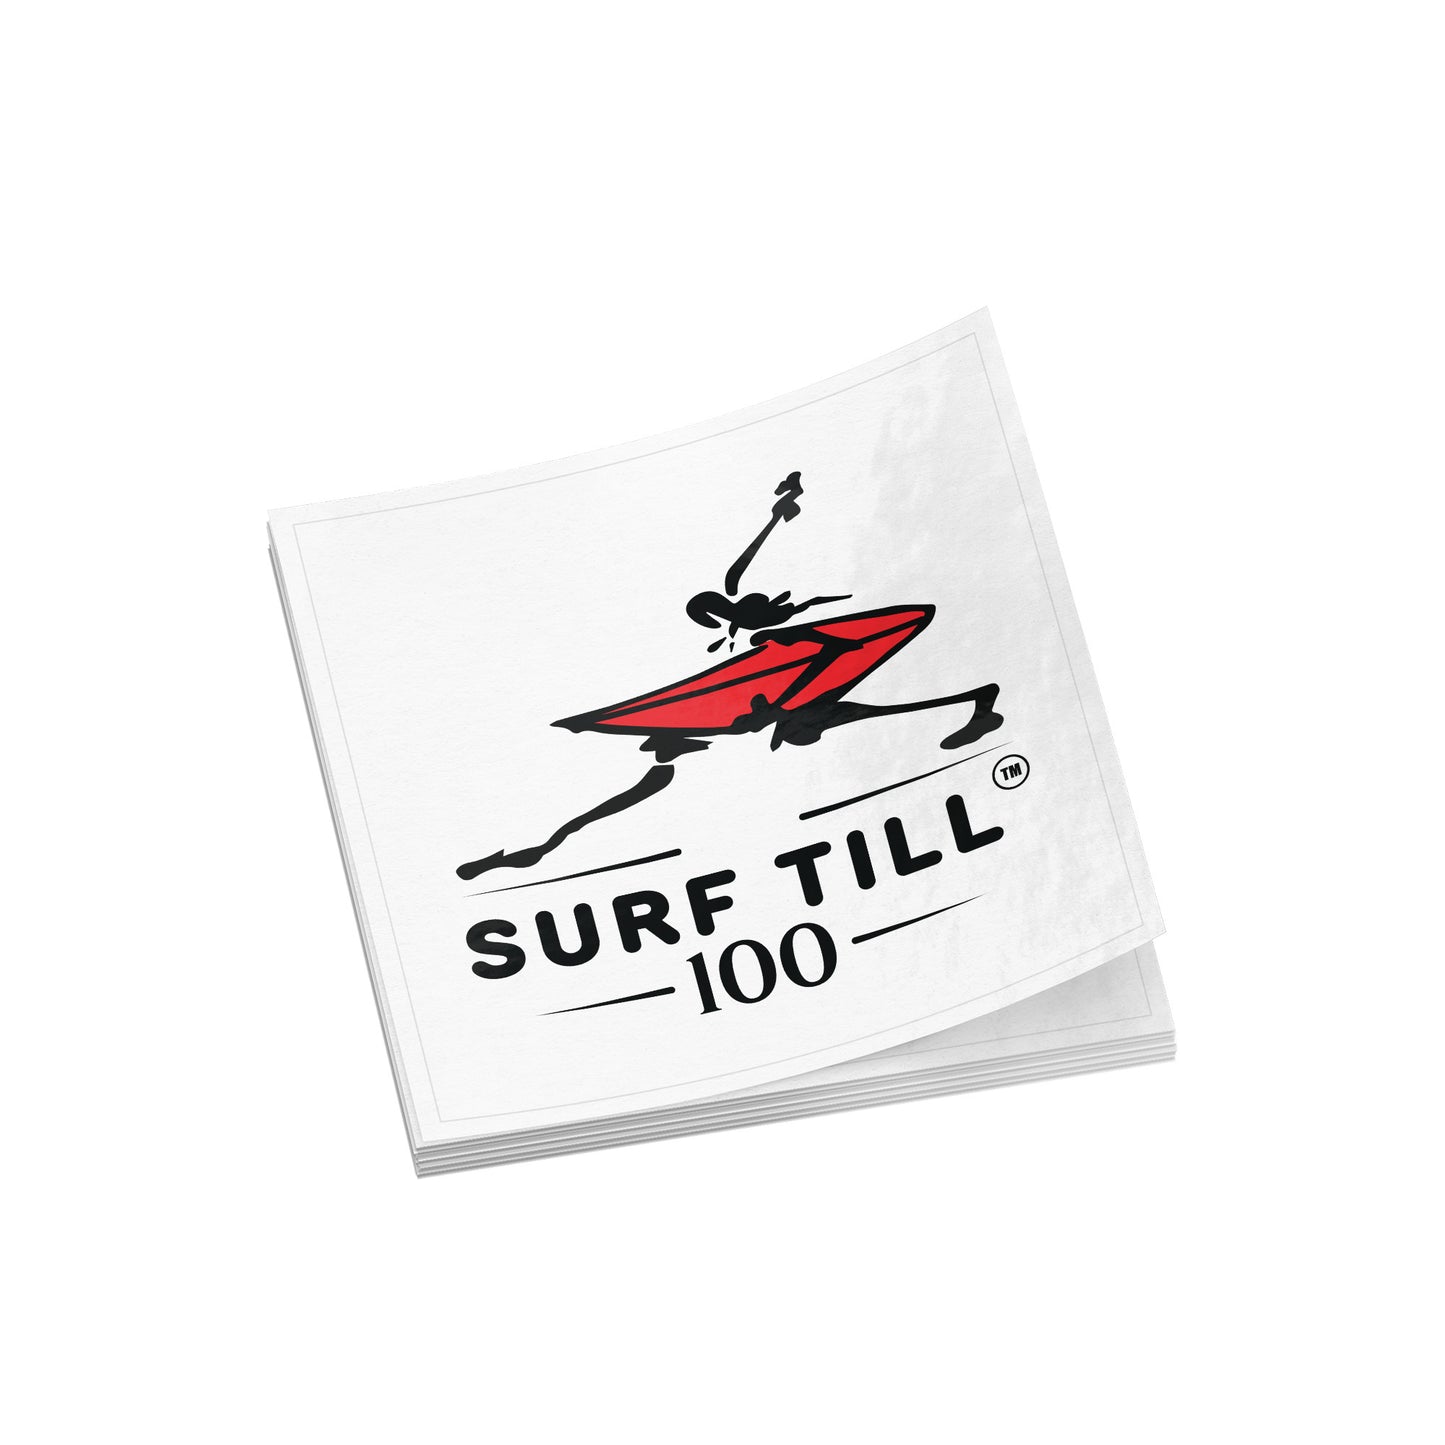 Surf Till 100 Stickers